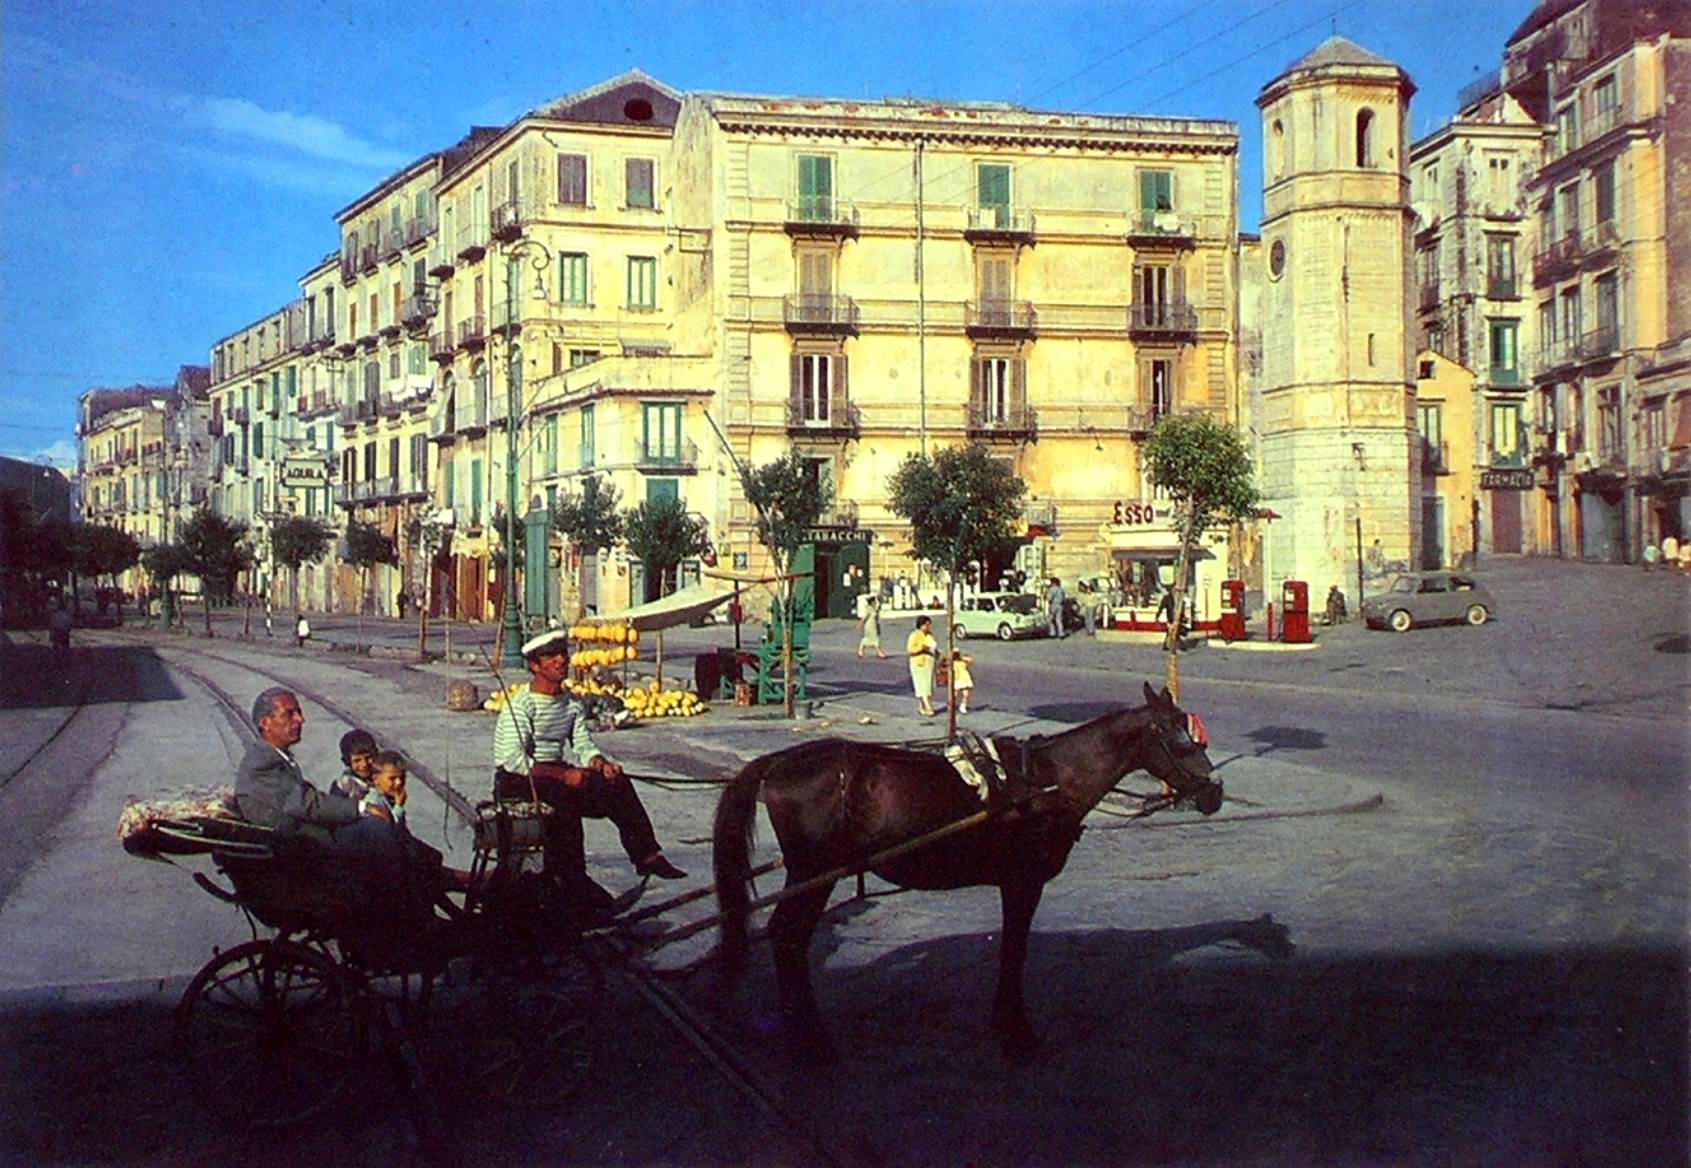 Carrozzella nei pressi di Piazza Orologio (cartolina ed. Biagio Molinari)